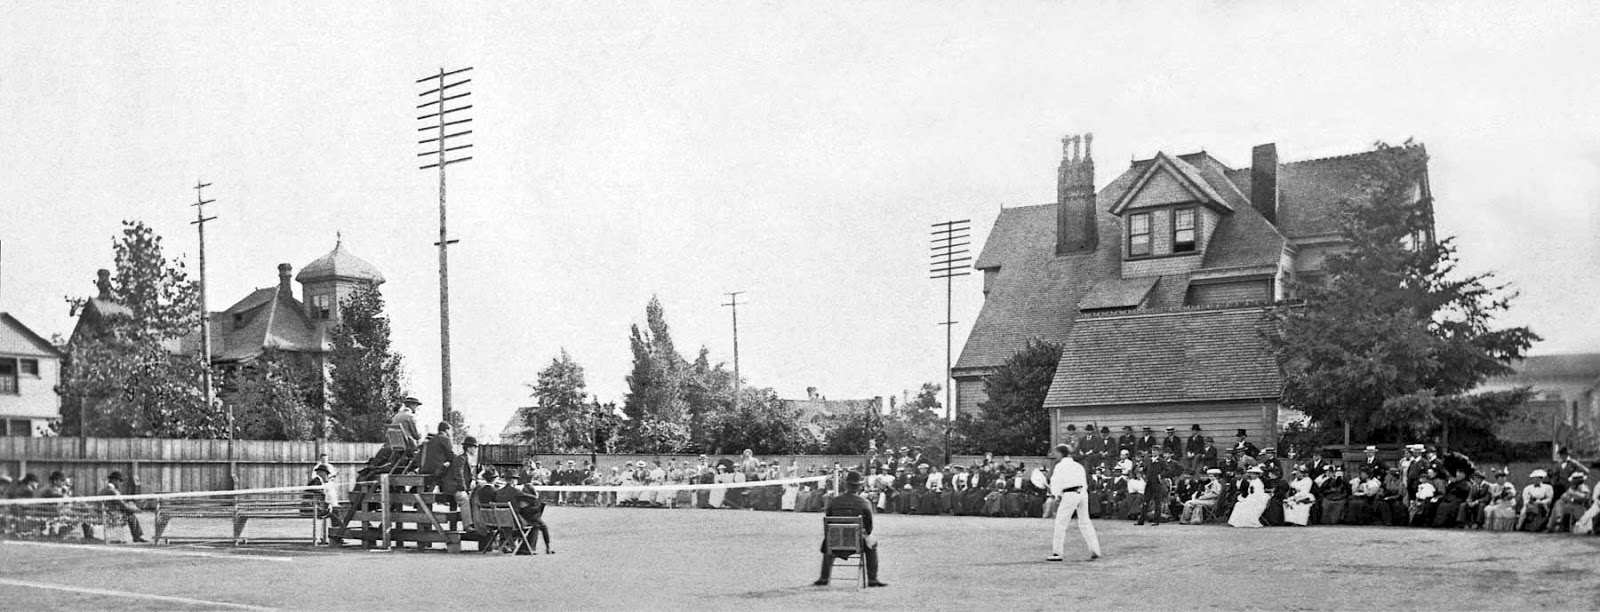 Men's singles match, Seattle, 1895.jpg